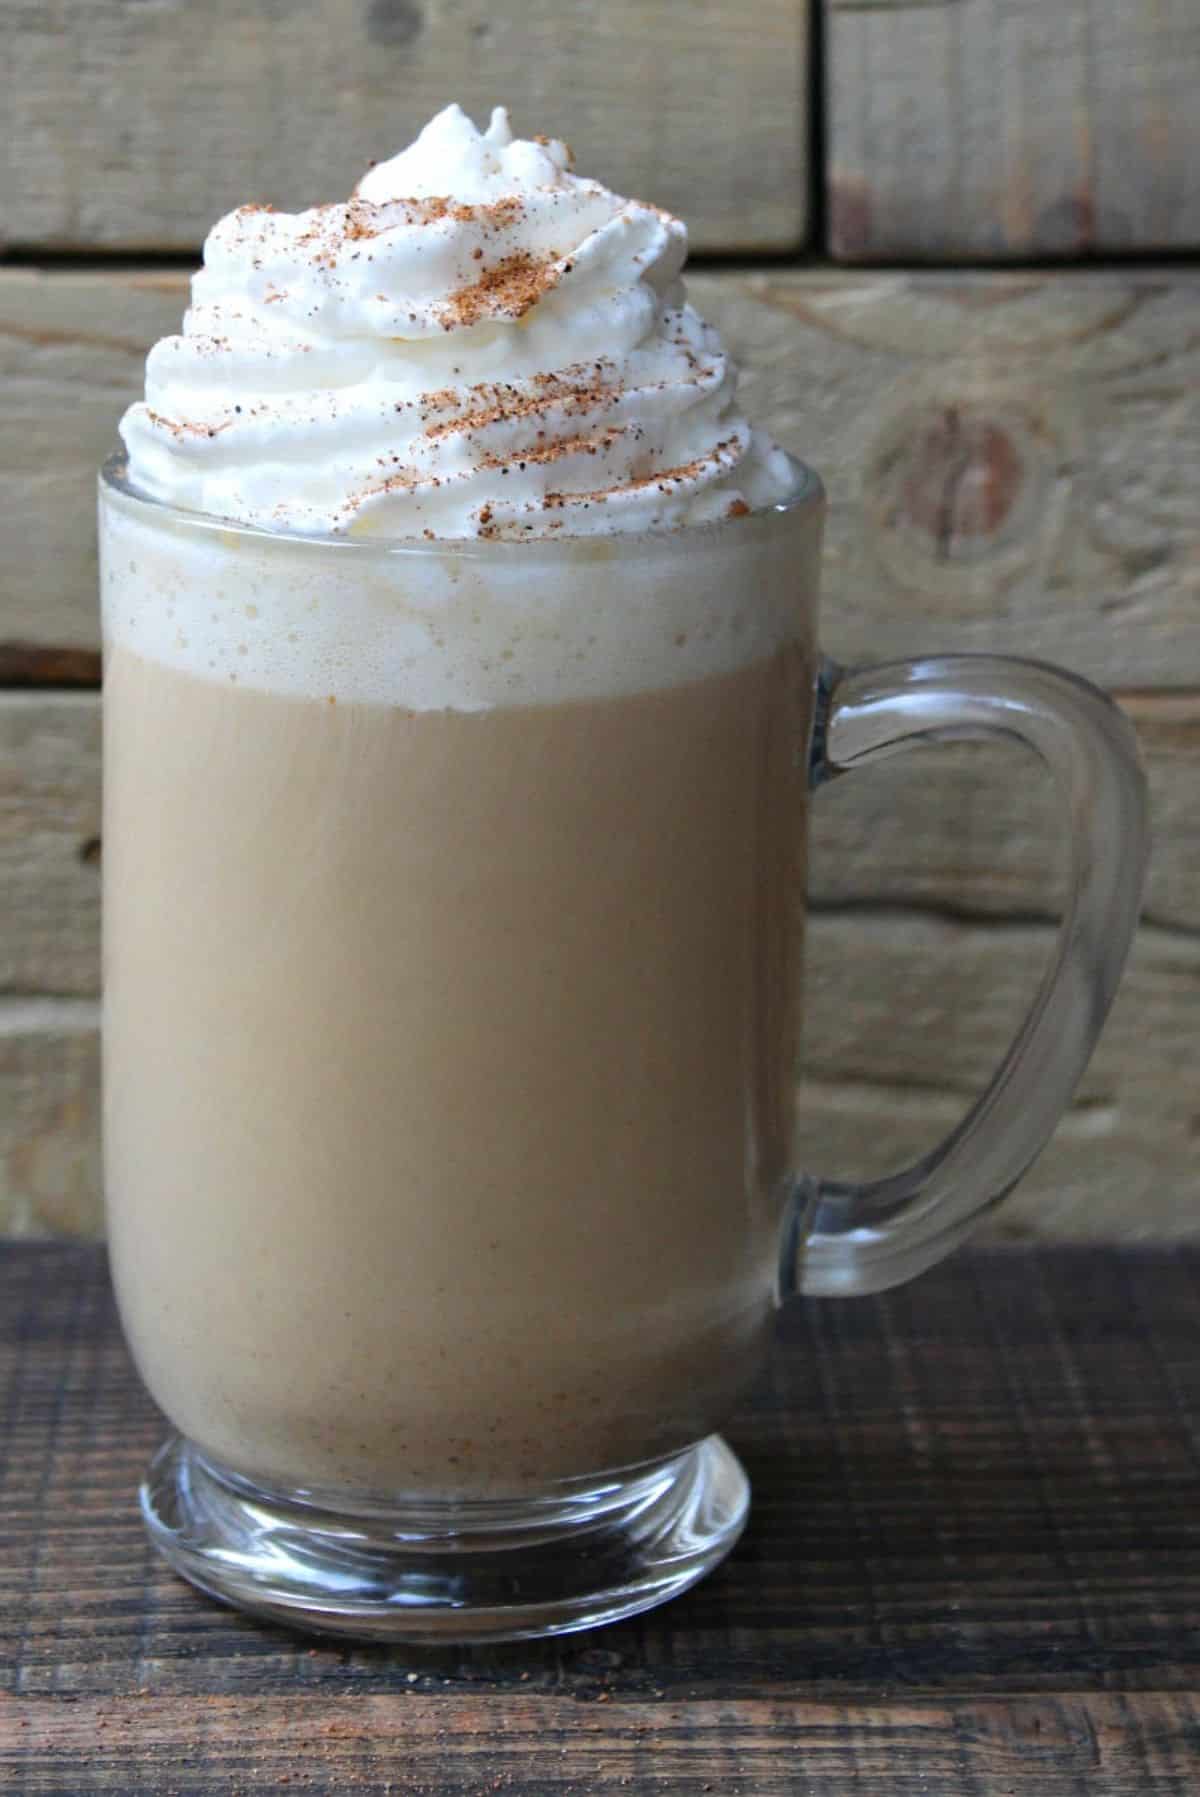 Creamy pumpkin spice latte in a glass cup.